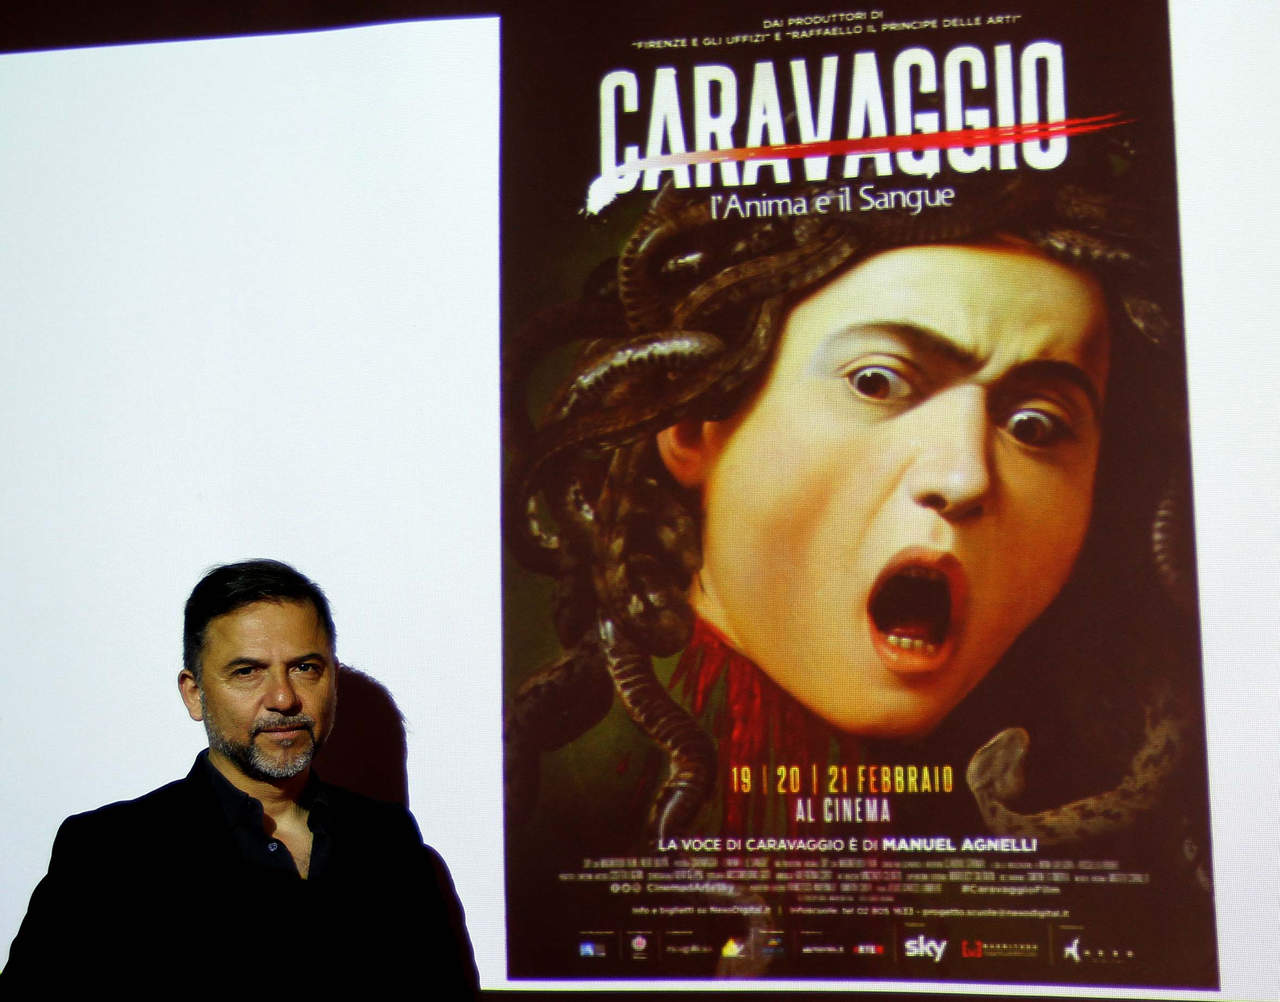 Reconocimiento. El filme ‘Caravaggio. El alma y la sangre’
ganó ayer el Globo de Oro al mejor documental en Italia. (ARCHIVO)